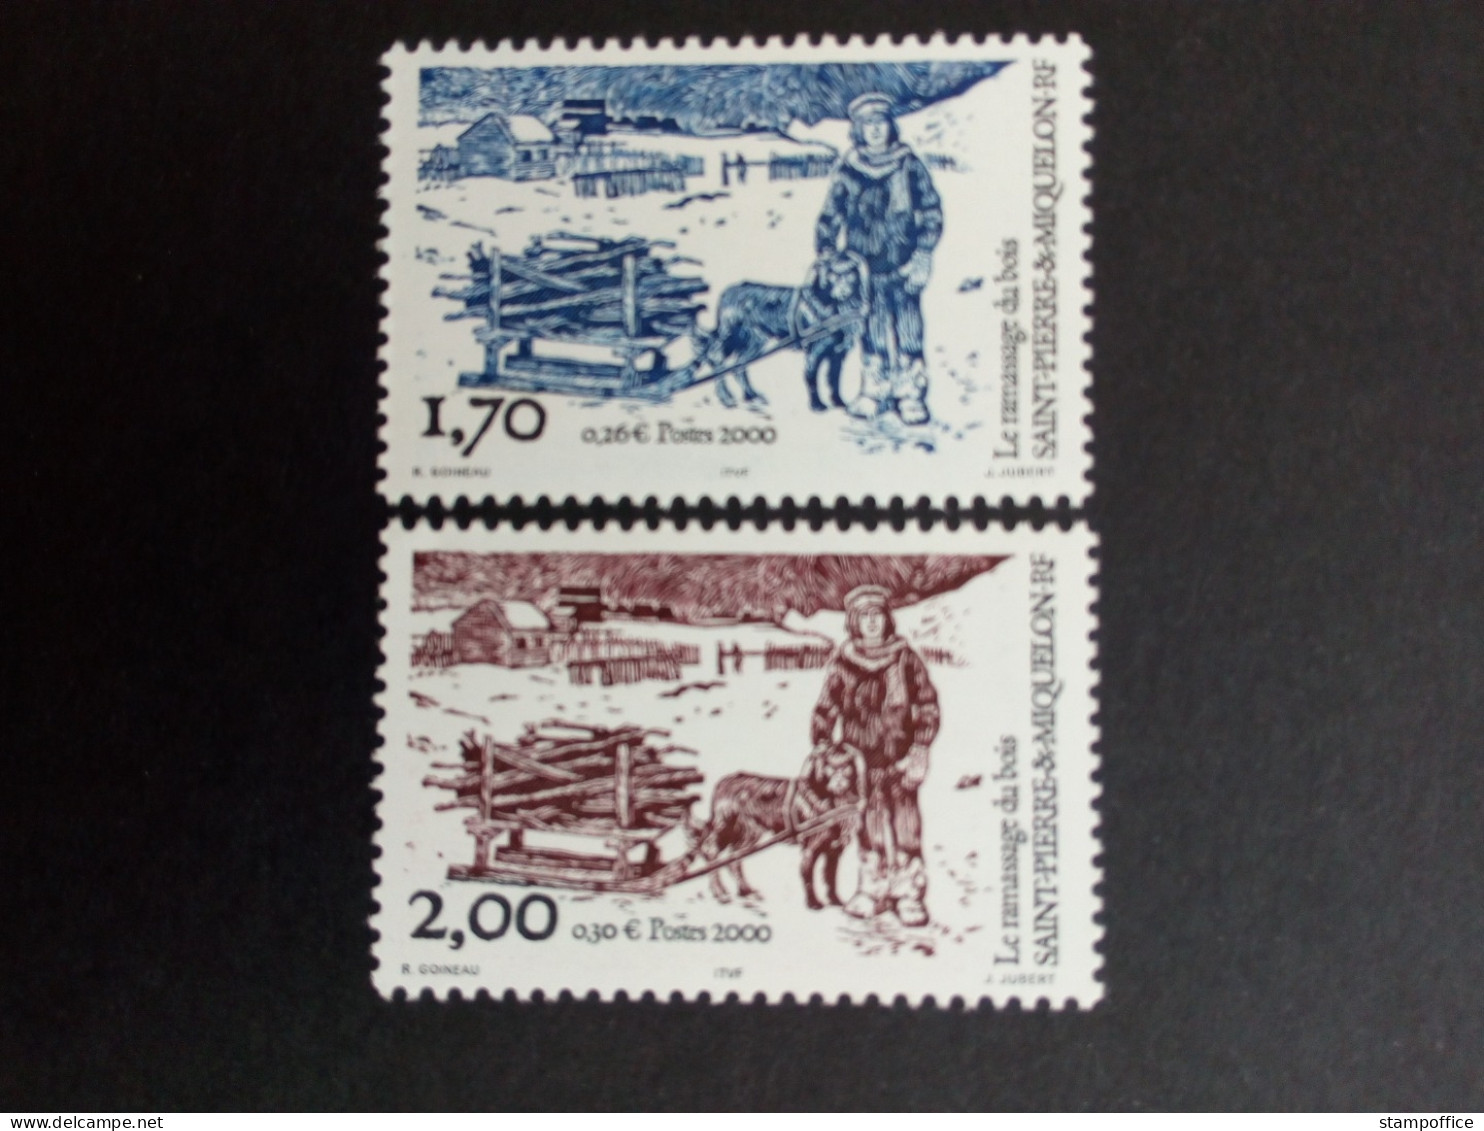 SAINT-PIERRE ET MIQUELON MI-NR. 795-796 POSTFRISCH(MINT) BRENNHOLZSAMMELN 2000 - Unused Stamps